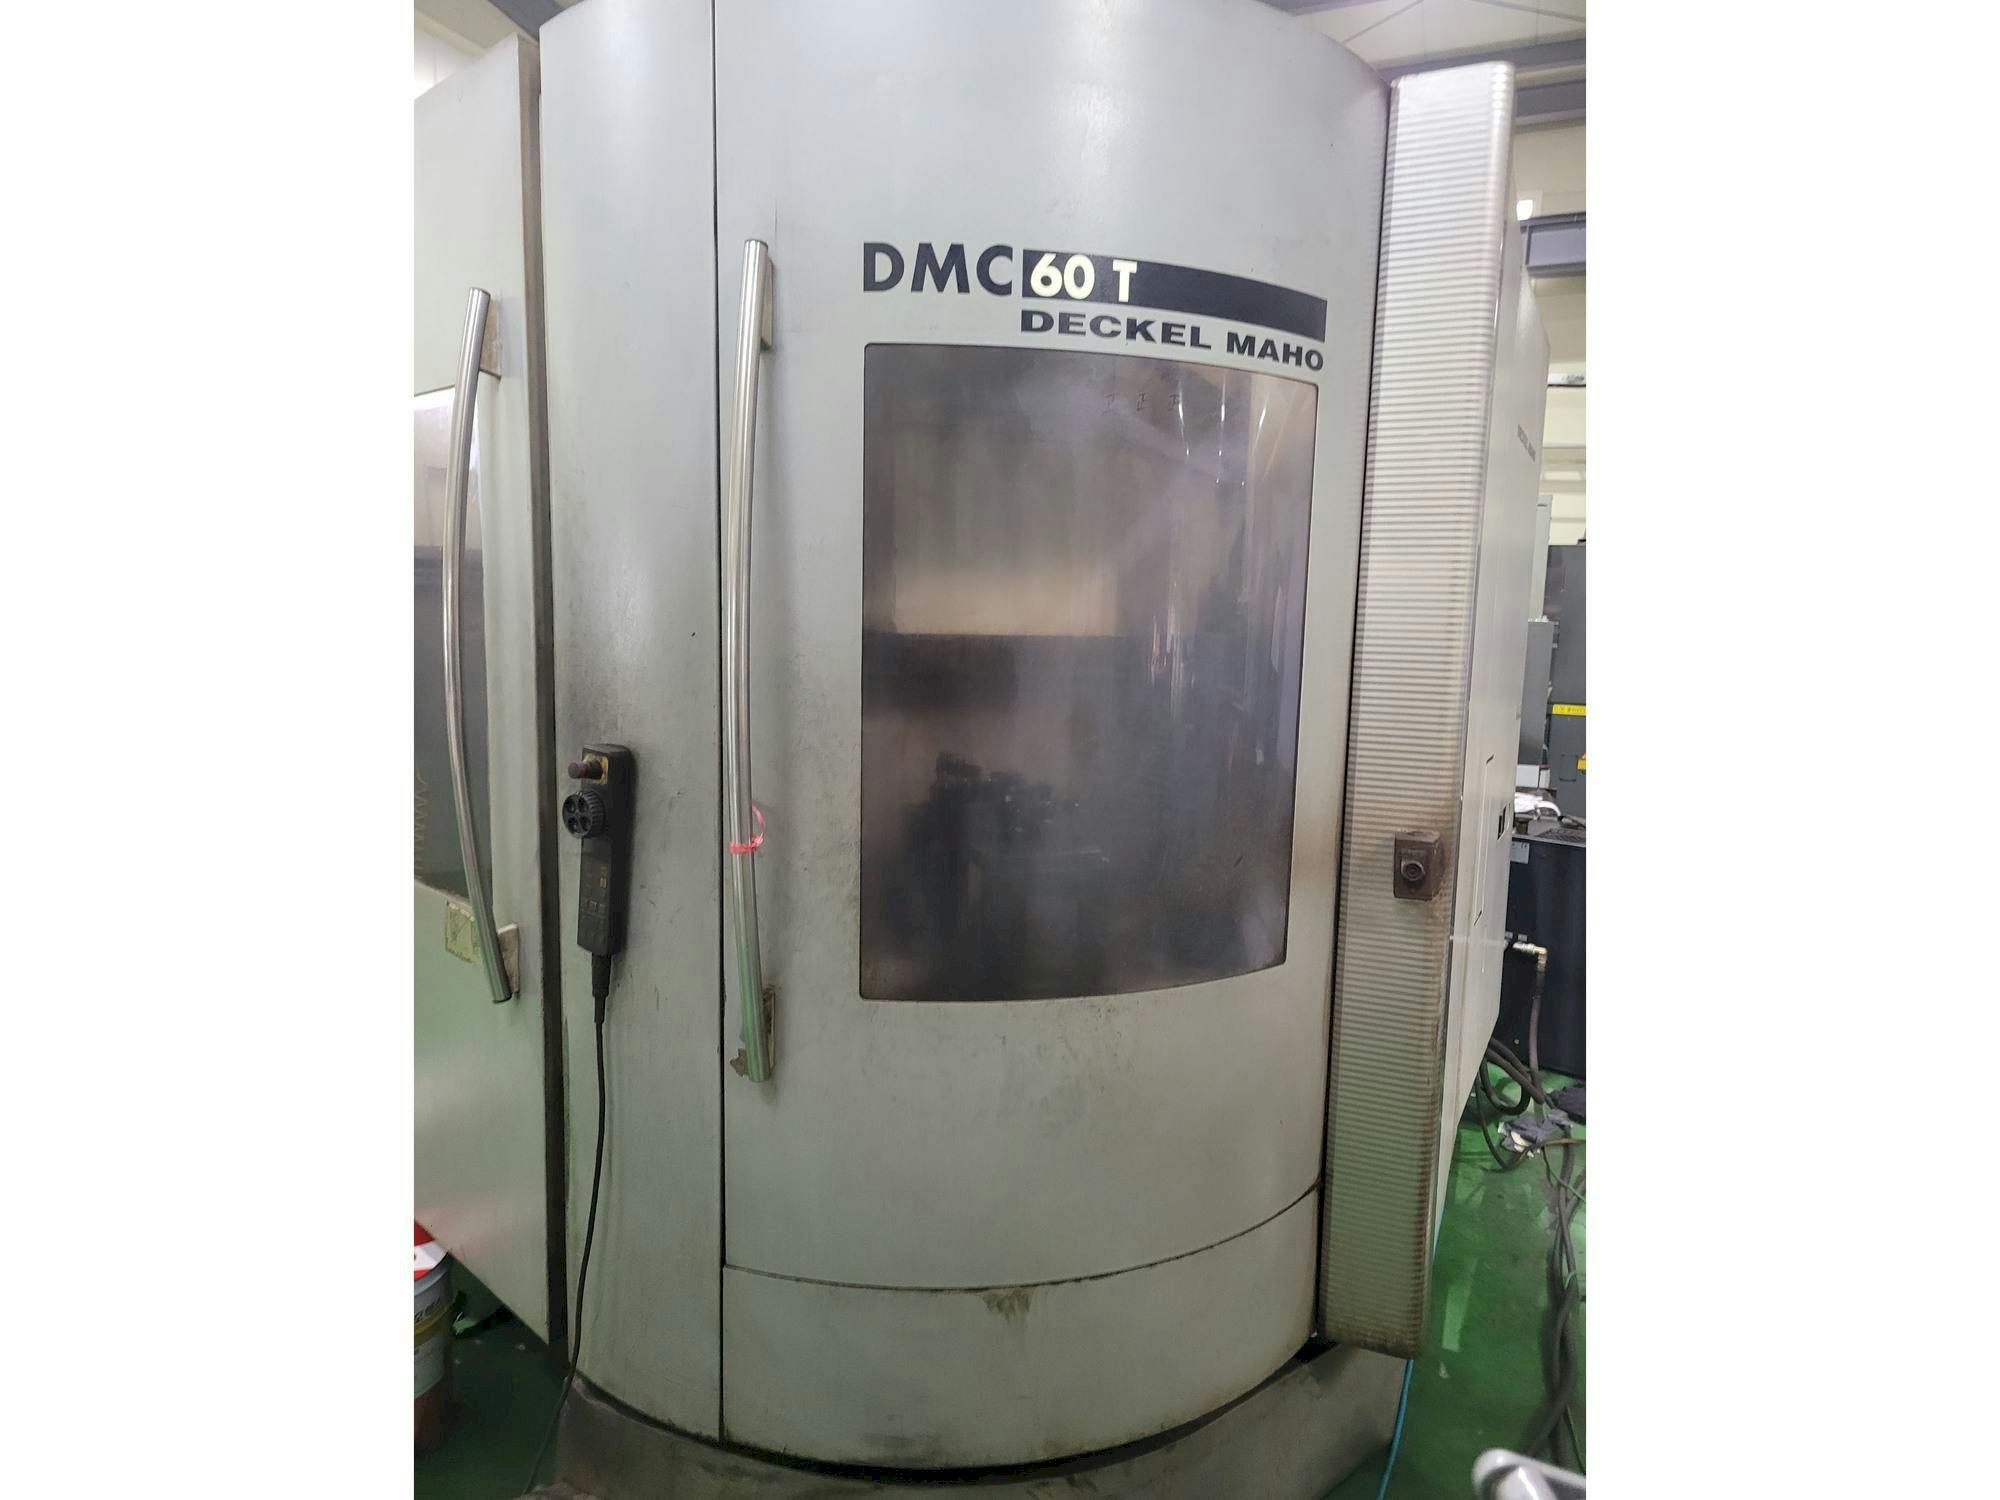 Vooraanzicht  van DECKEL MAHO DMC 60 T  machine